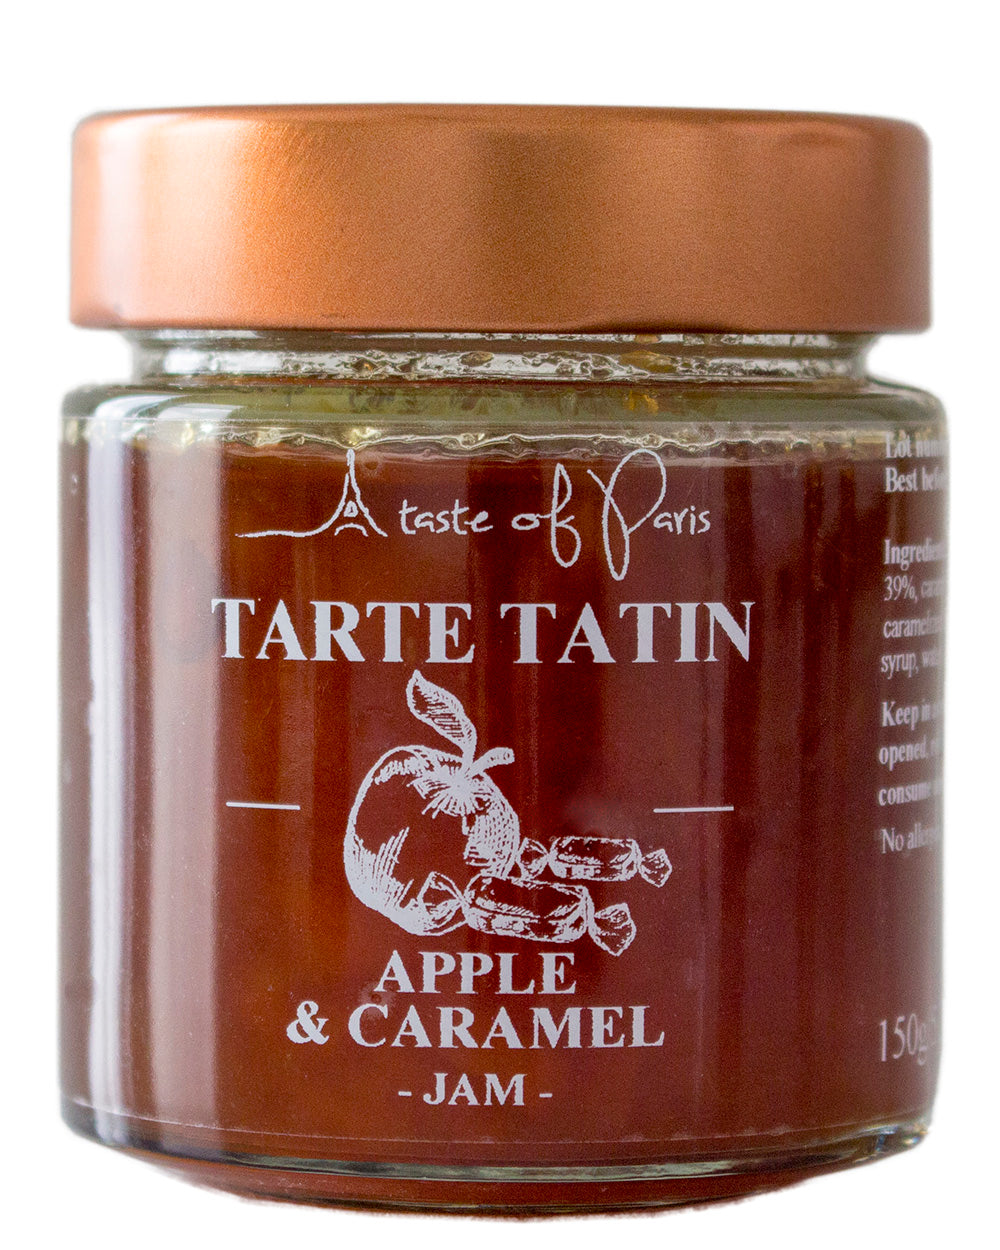 Apple & Caramel Jam 150g